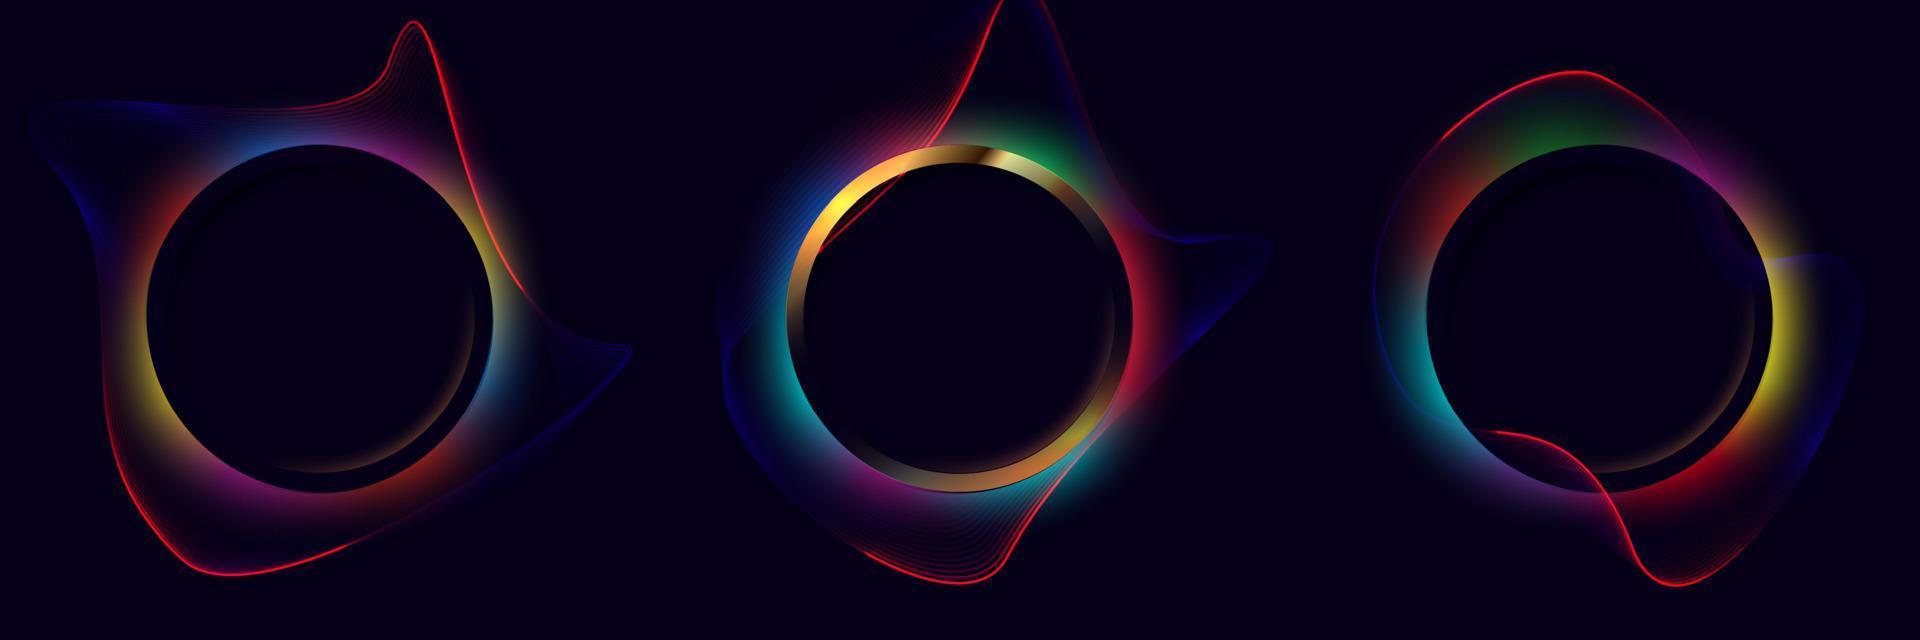 conjunto de moldura de círculo com linhas dinâmicas onduladas multicoloridas neon brilhantes redondas iluminam e giram o efeito de iluminação no fundo preto. vetor